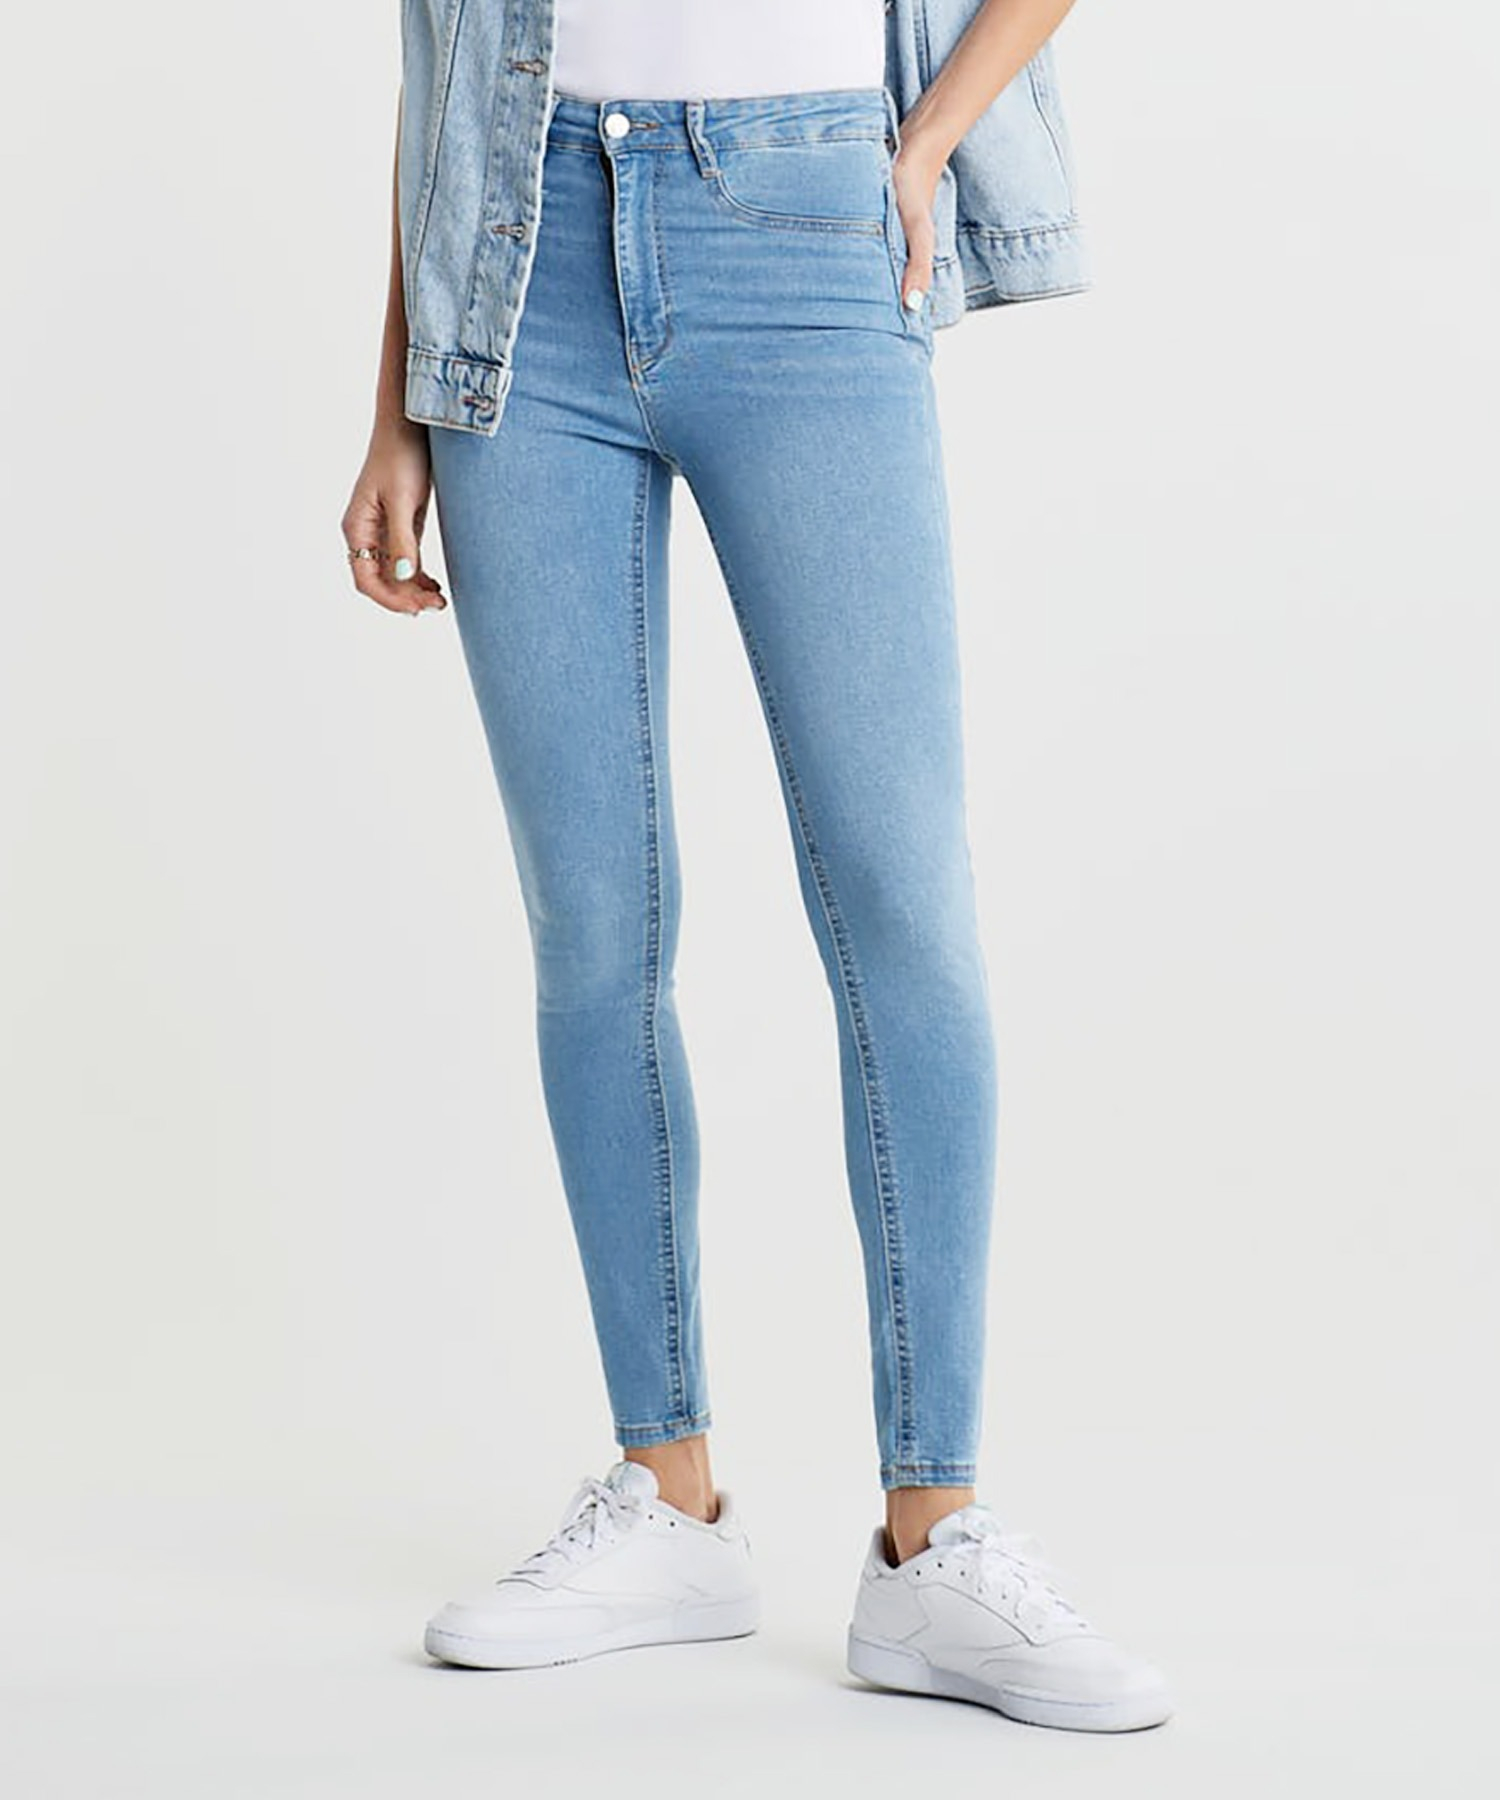 Molly high waist jeans